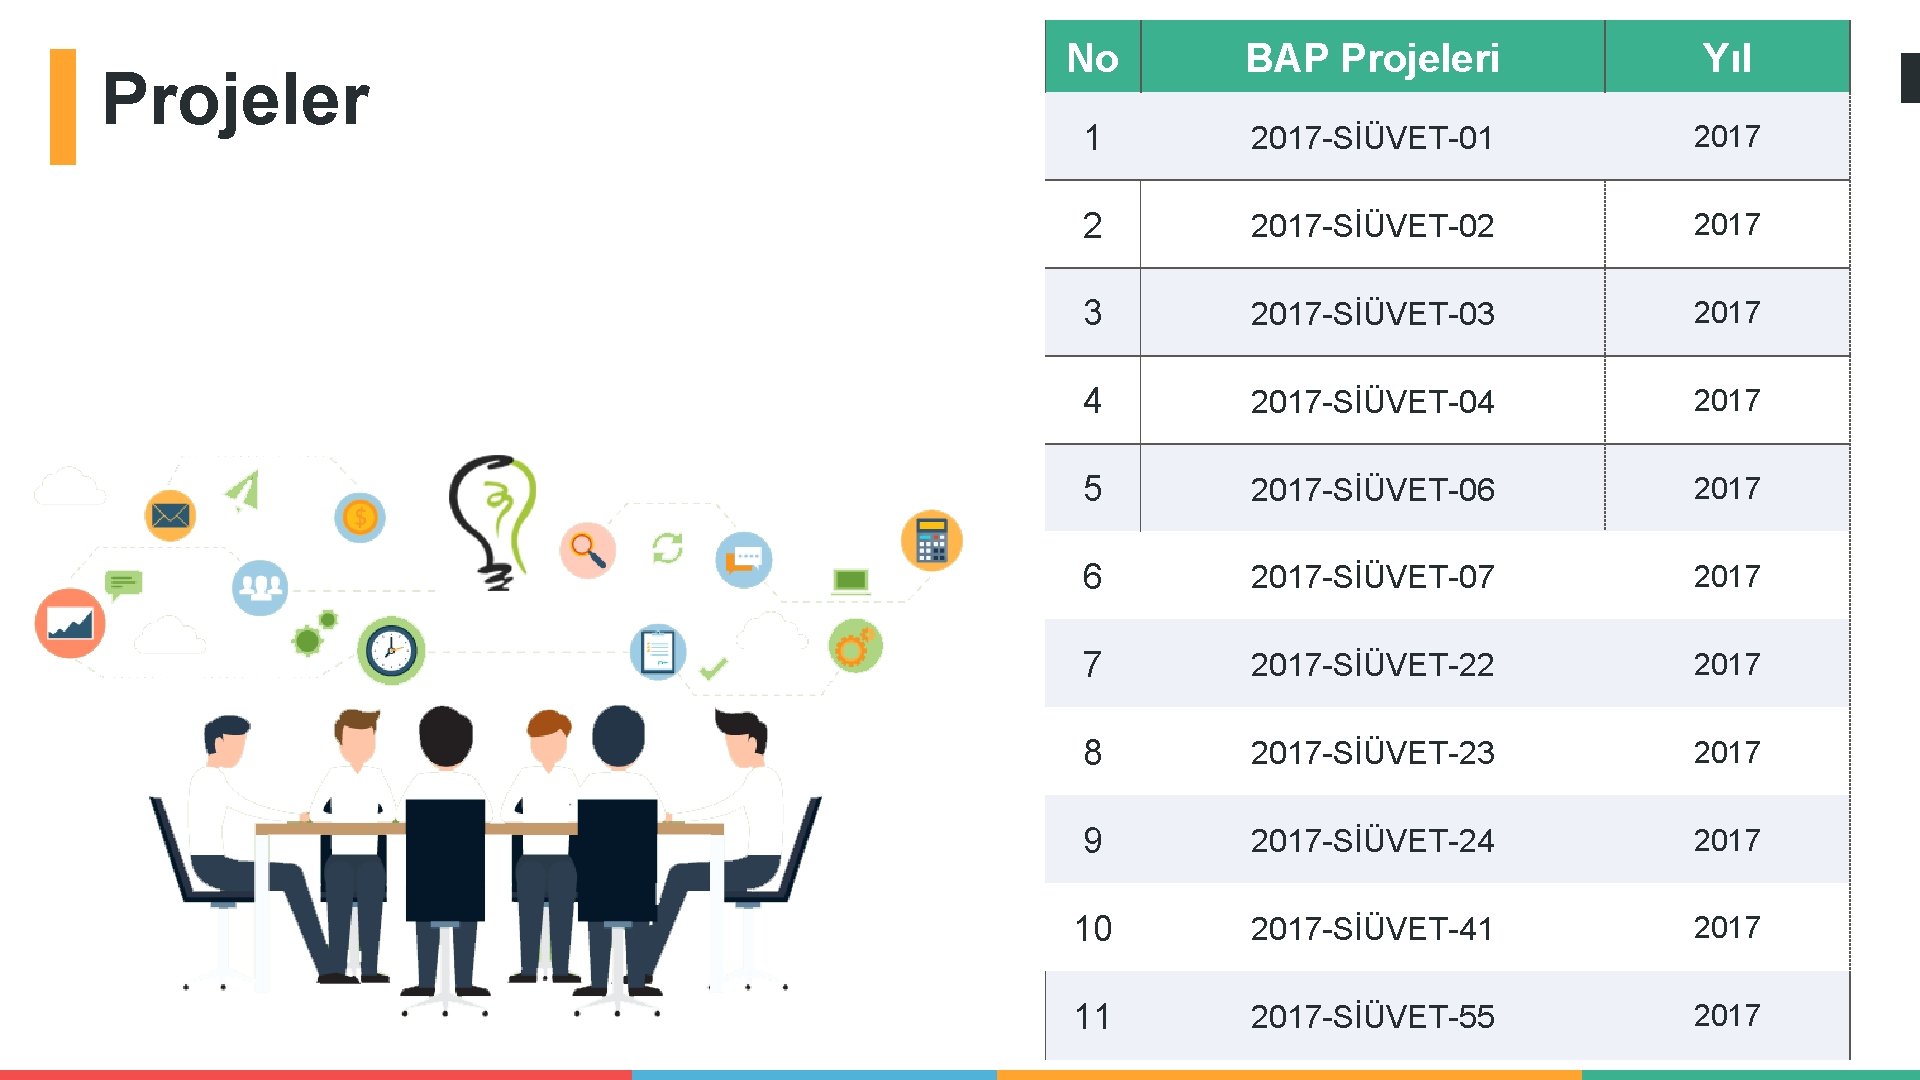 Projeler No BAP Projeleri Yıl 1 2017 -SİÜVET-01 2017 2 2017 -SİÜVET-02 2017 3